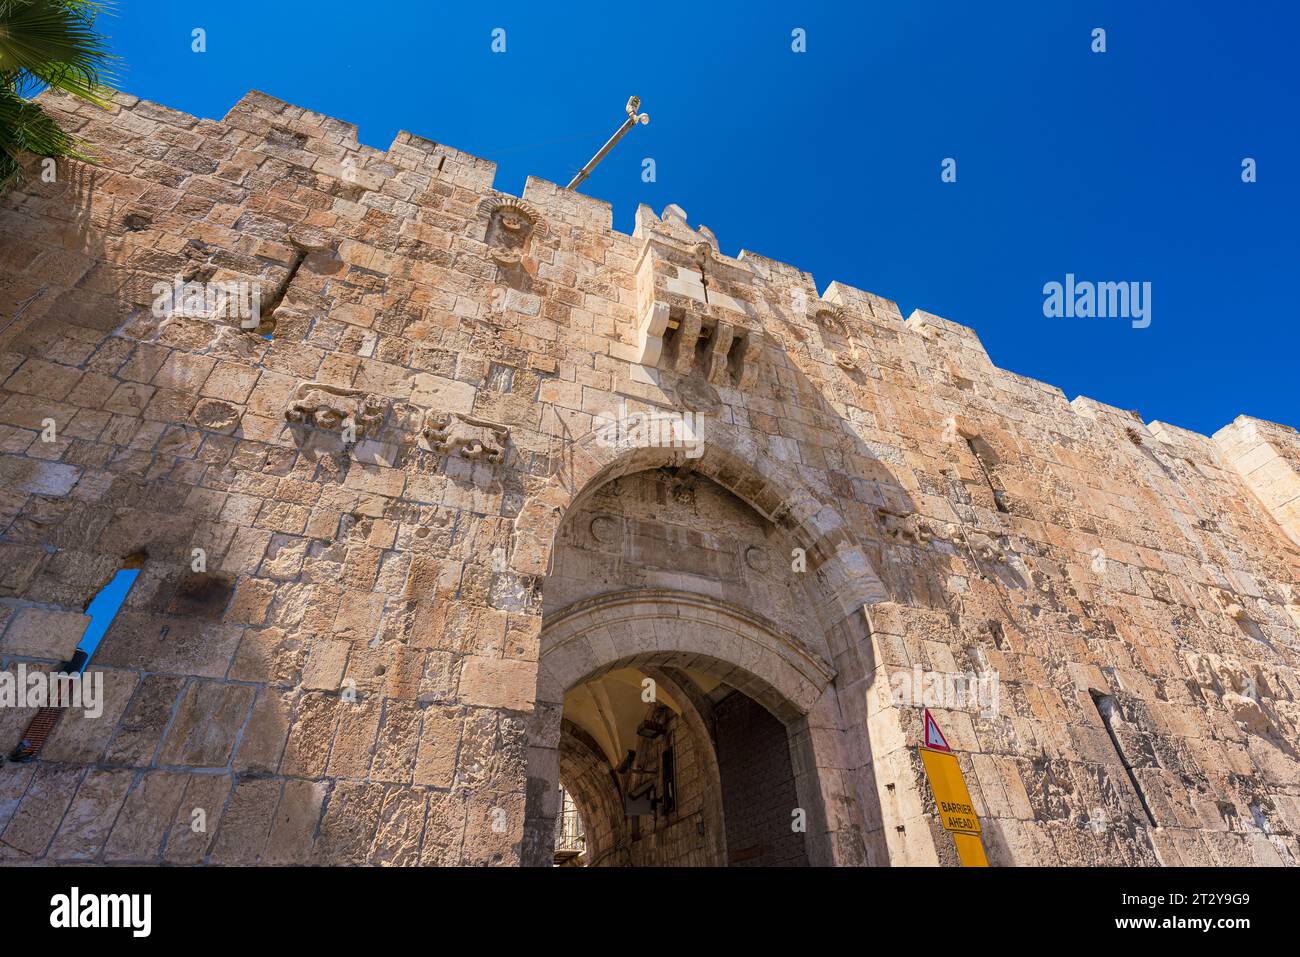 La porte des Lions est l'une des sept entrées de la vieille ville de Jérusalem. Il est nommé d'après les Lions sculptés sur son mur. Banque D'Images